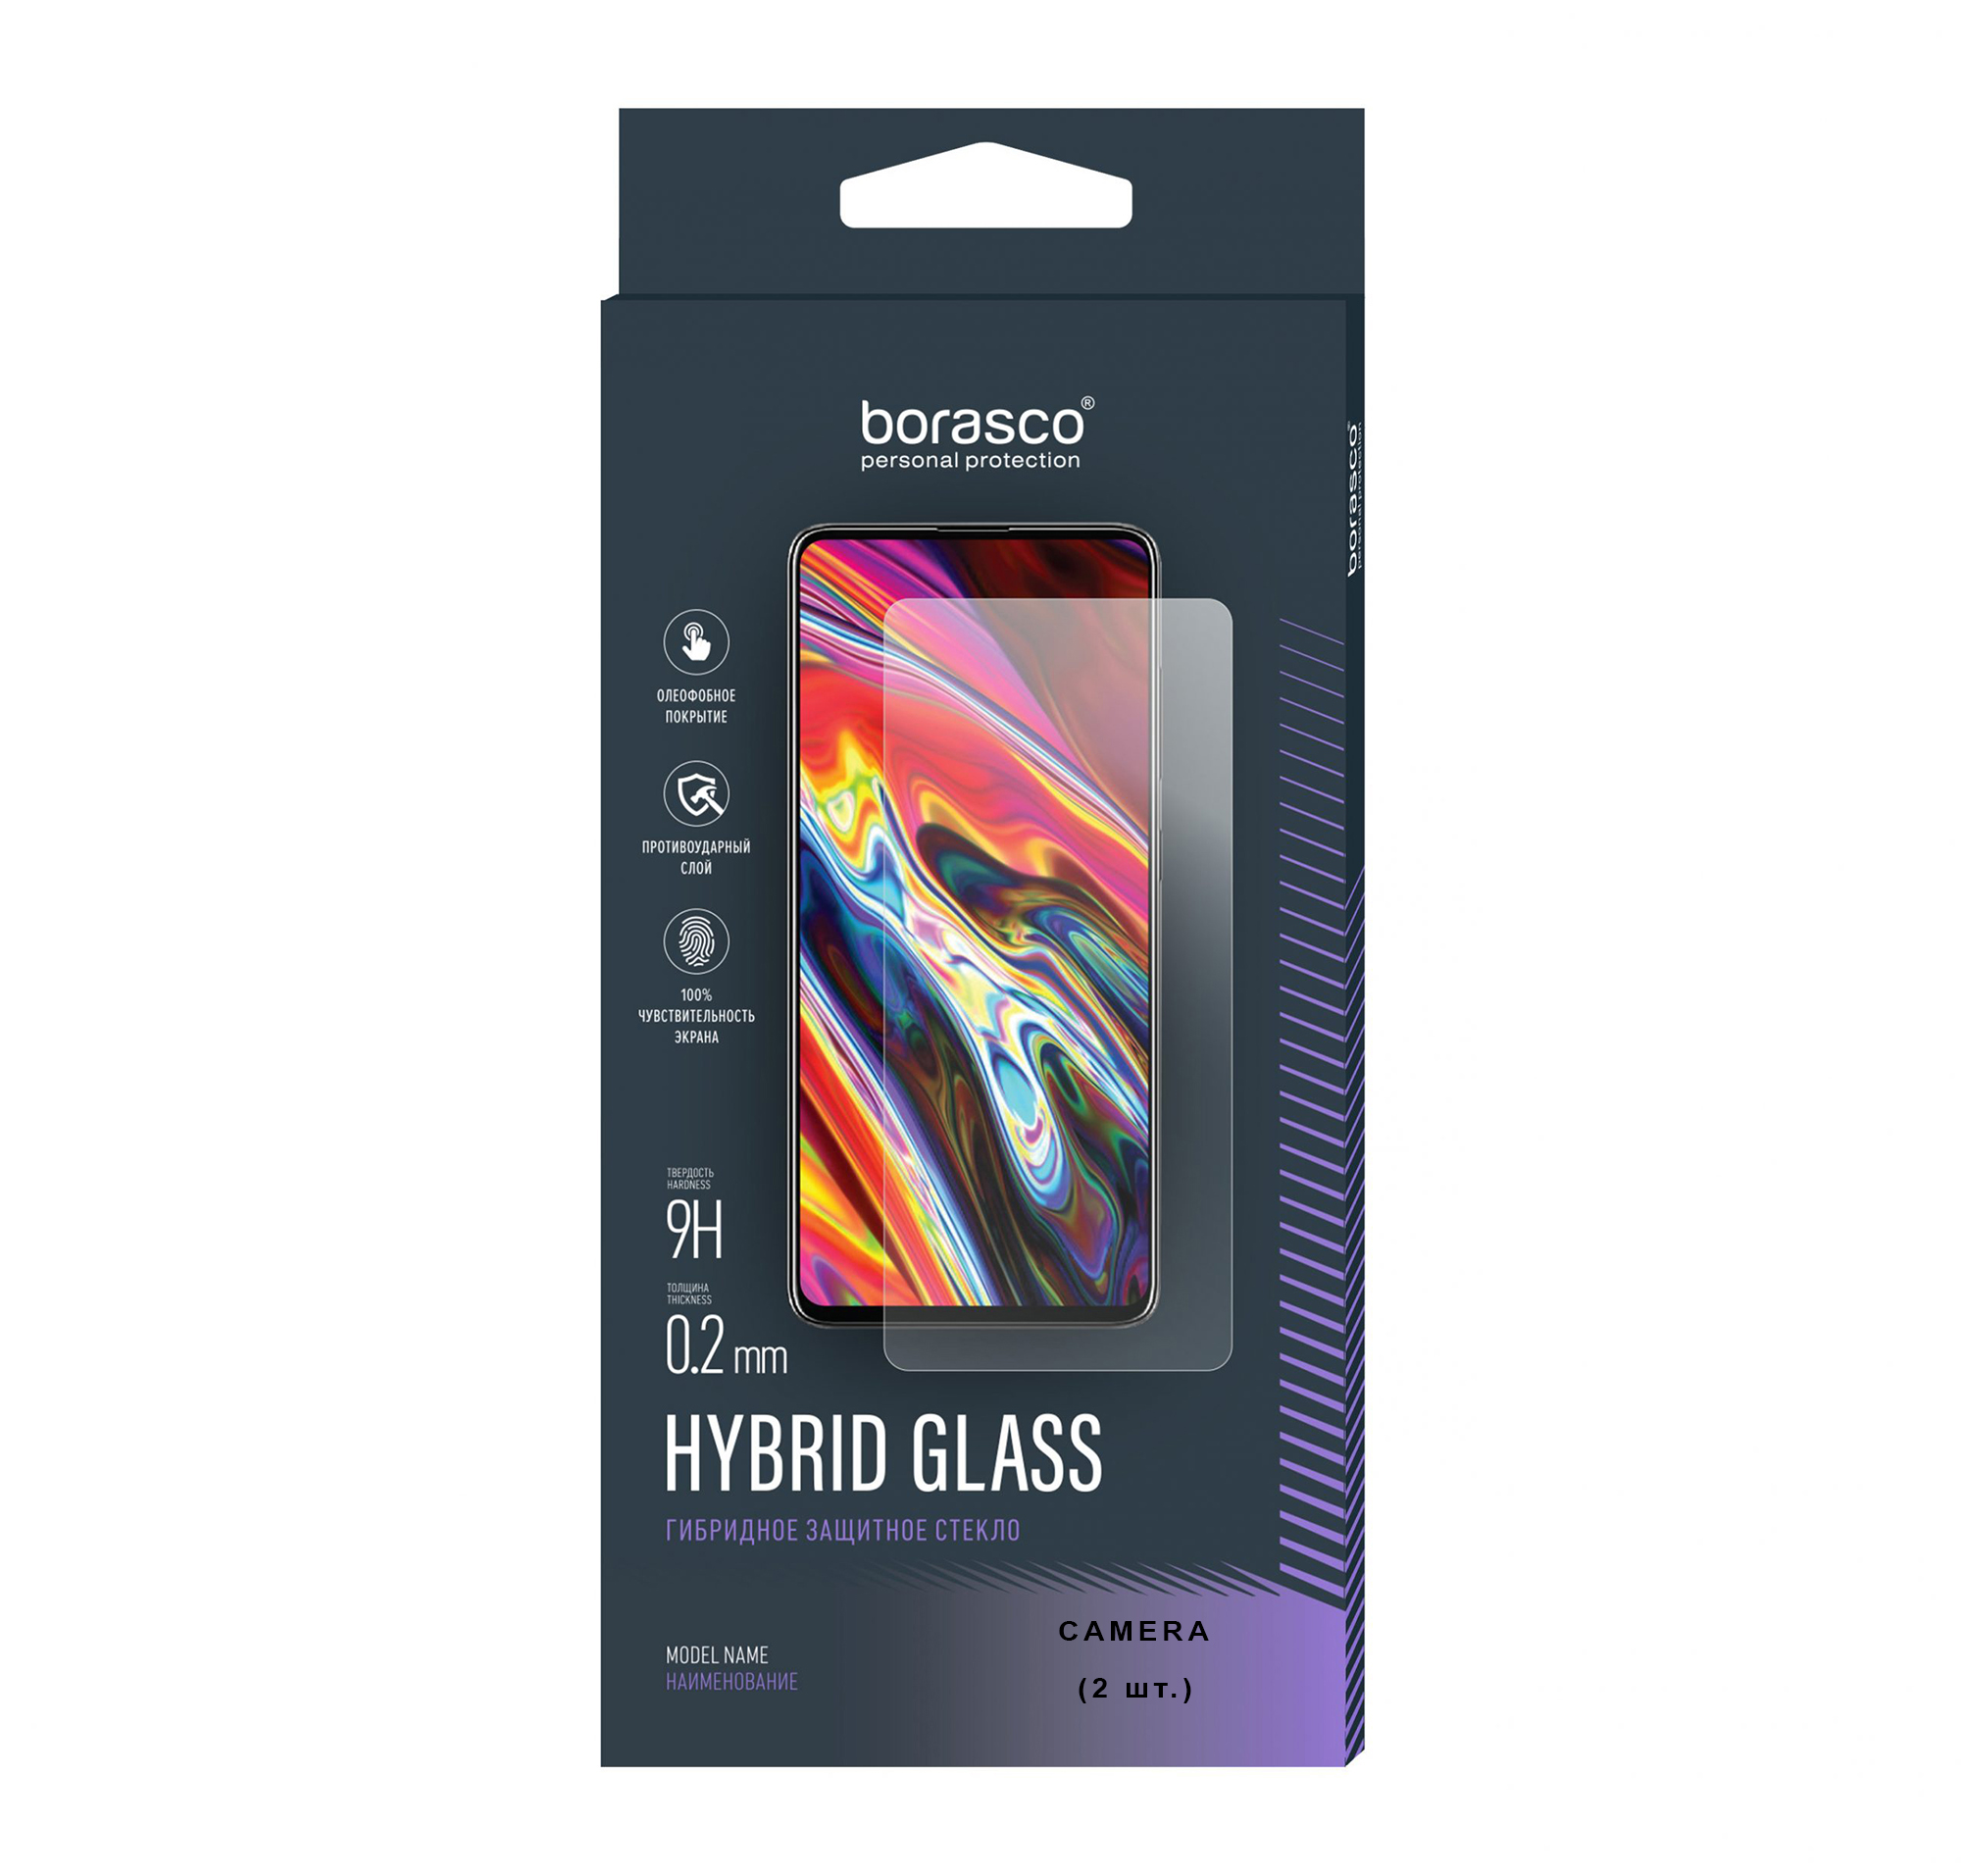 Защитное стекло (Экран+Камера) Hybrid Glass для Honor 9X Premium чехол книжка чехол ру premium для honor 9x stk lx1 huawei honor 9x premium из качественной импортной натуральной кожи теленка с фактурной прошив